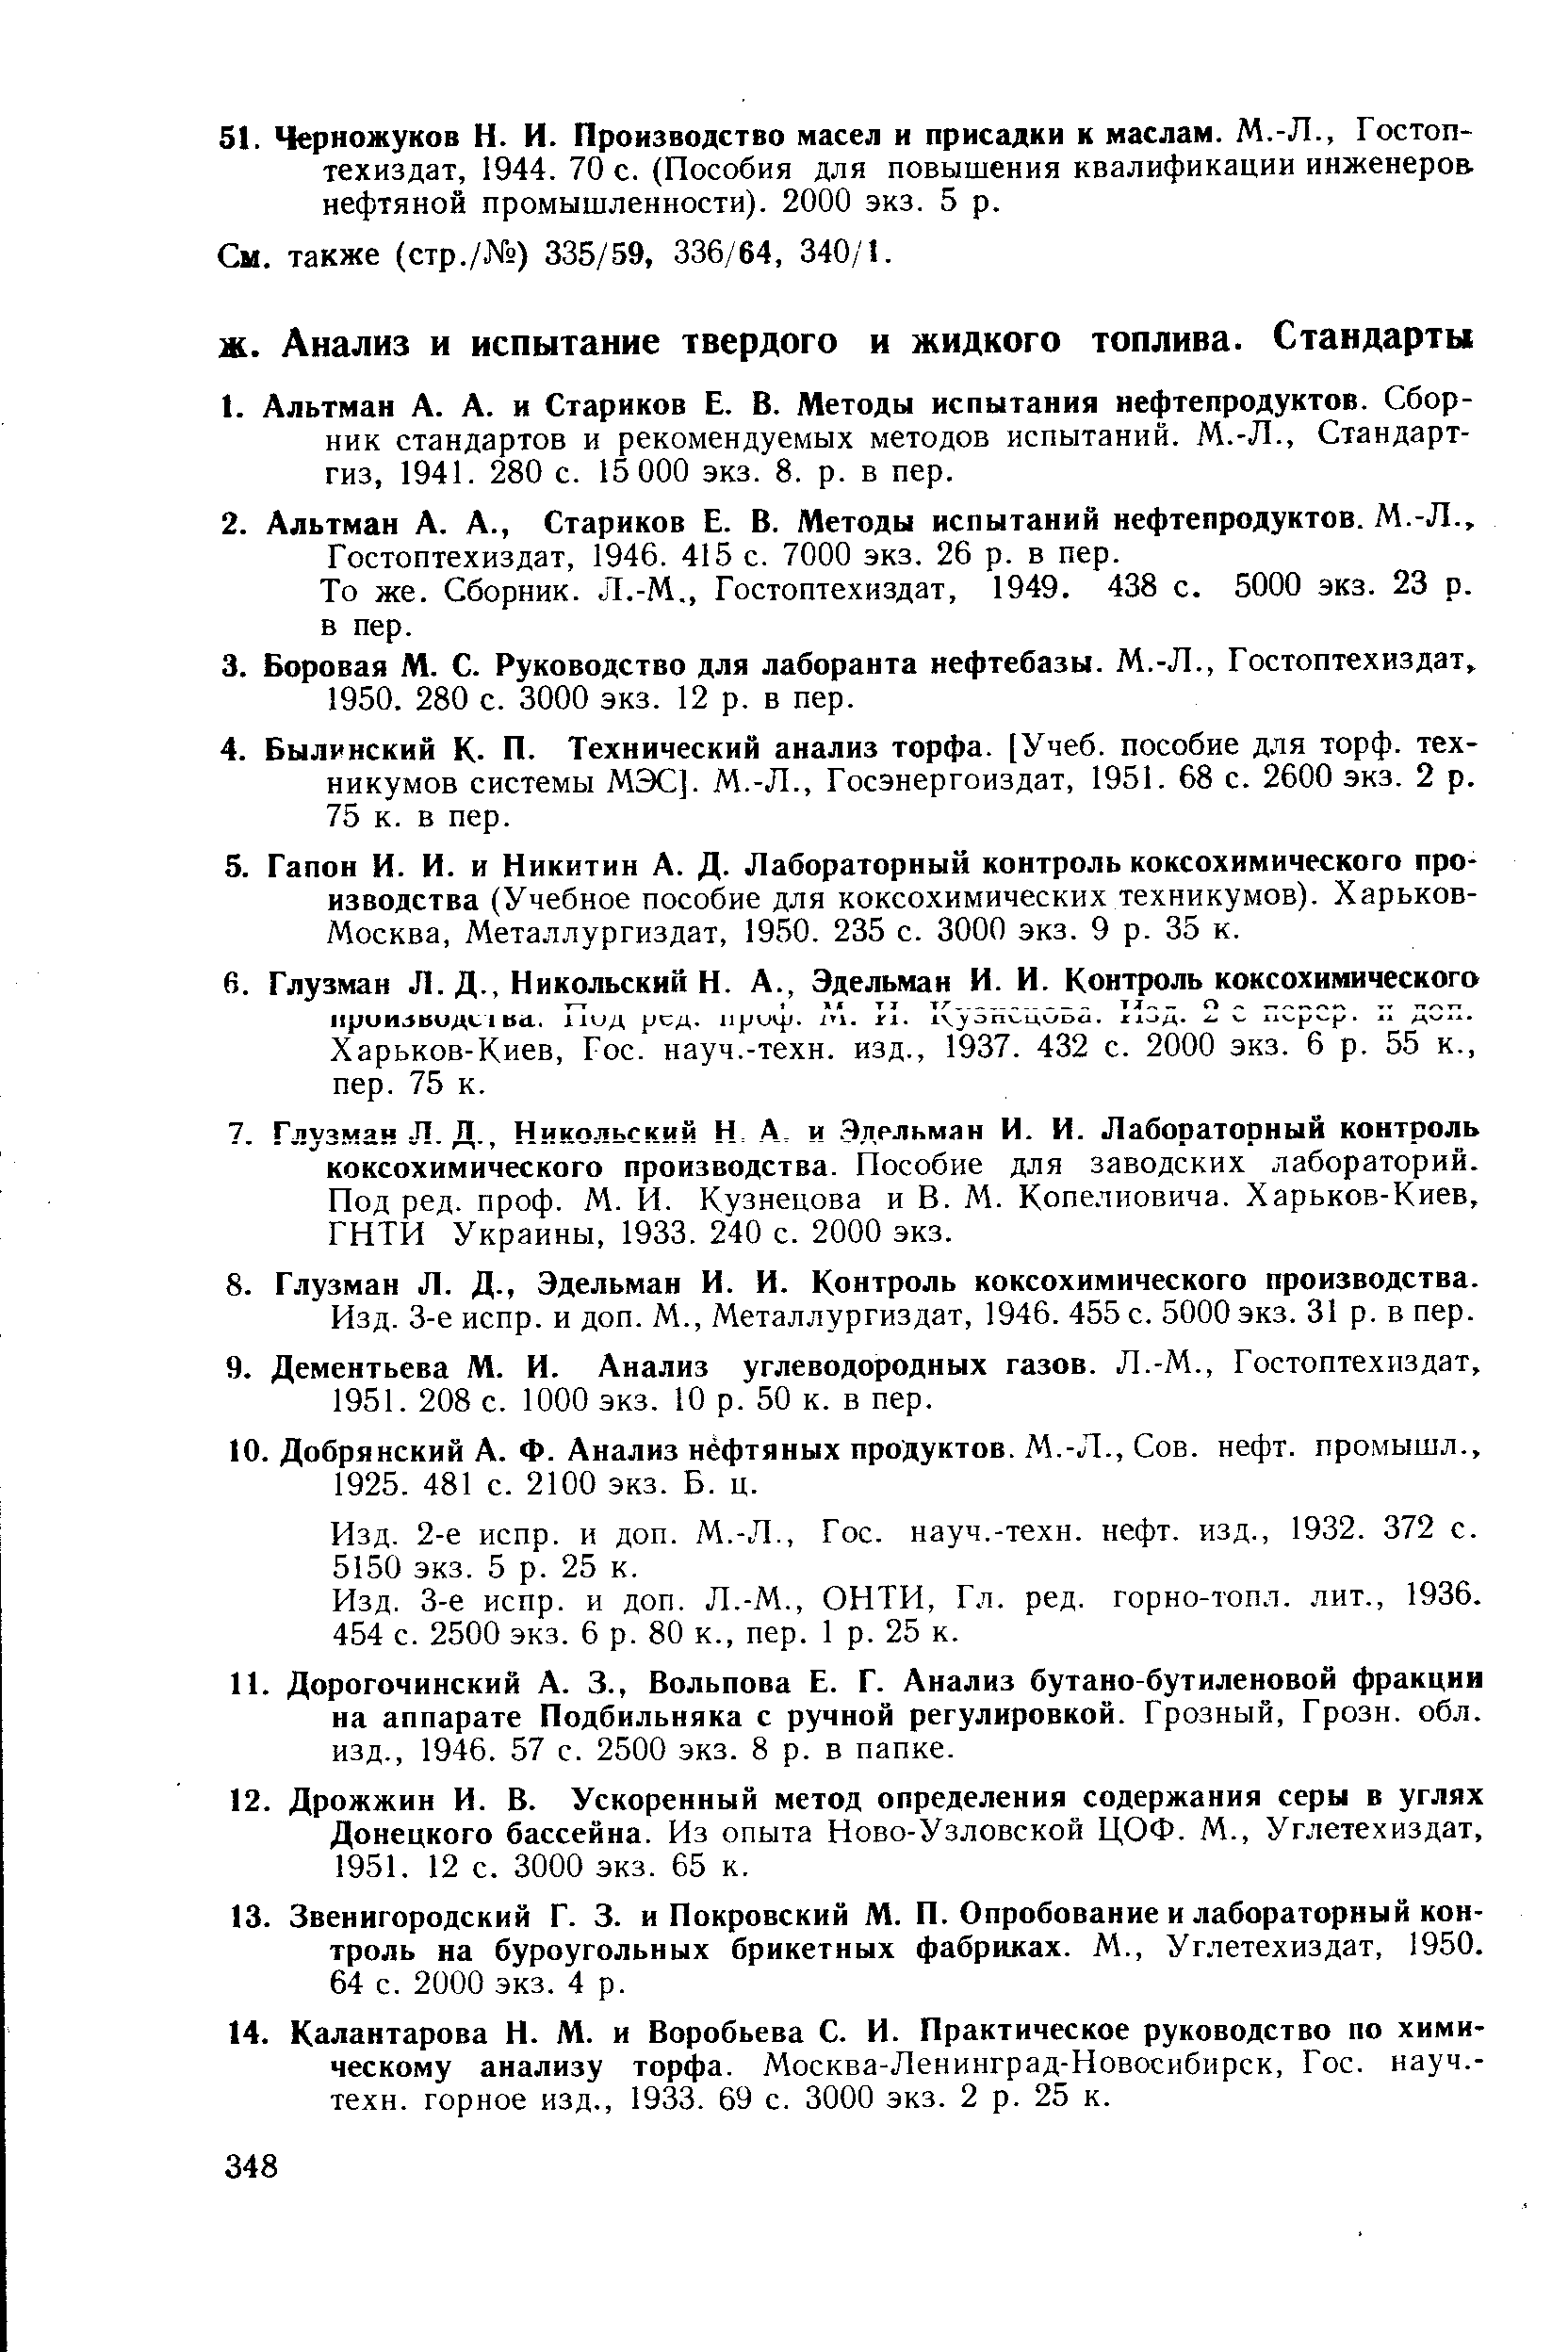 Гостоптехиздат, 1946. 415 с. 7000 экз. 26 р. в пер.